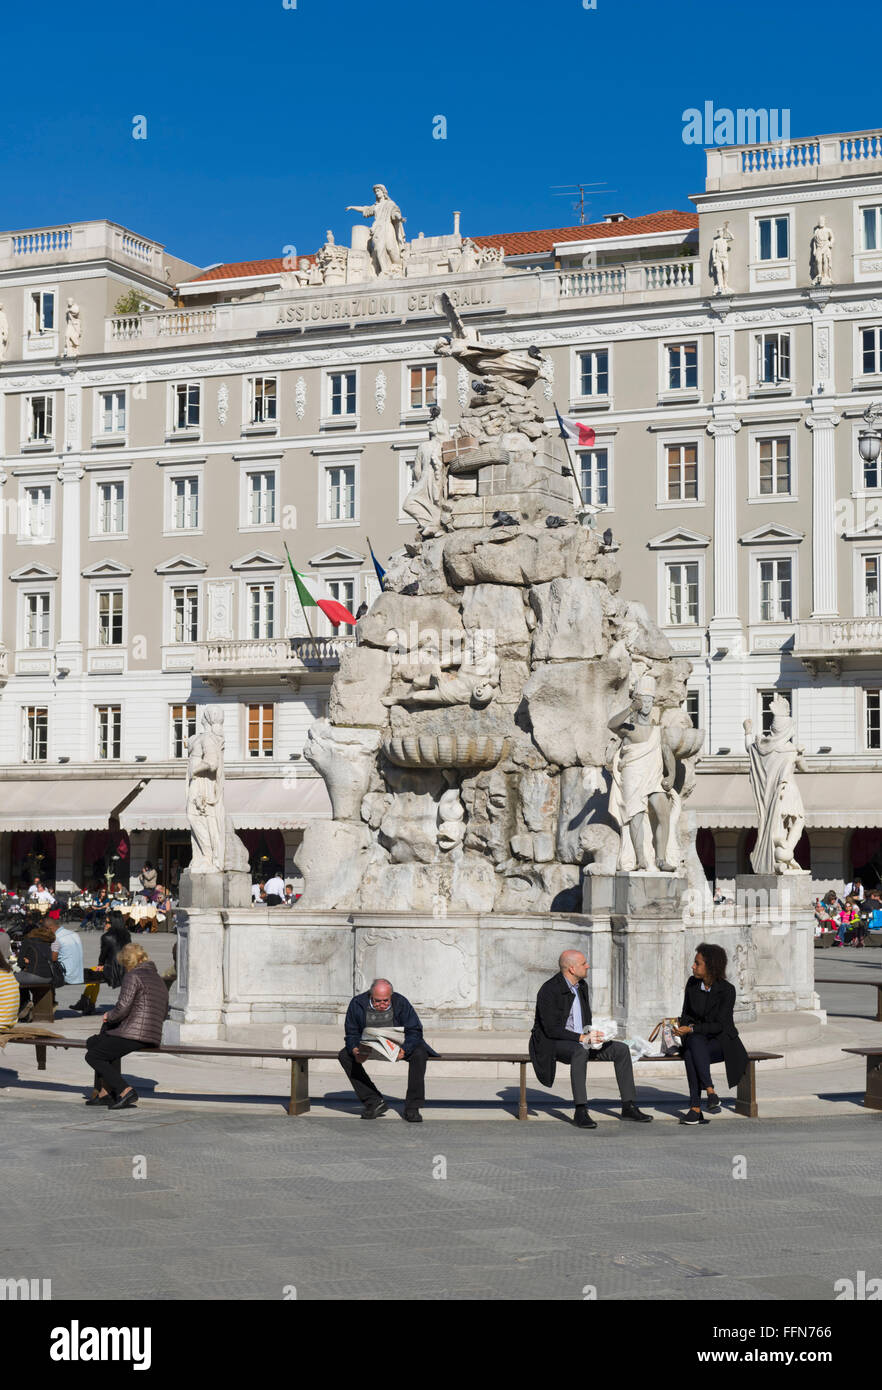 Les touristes à la fontaine sur la Piazza Unita d'Italia square, Trieste, Italie, Europe Banque D'Images